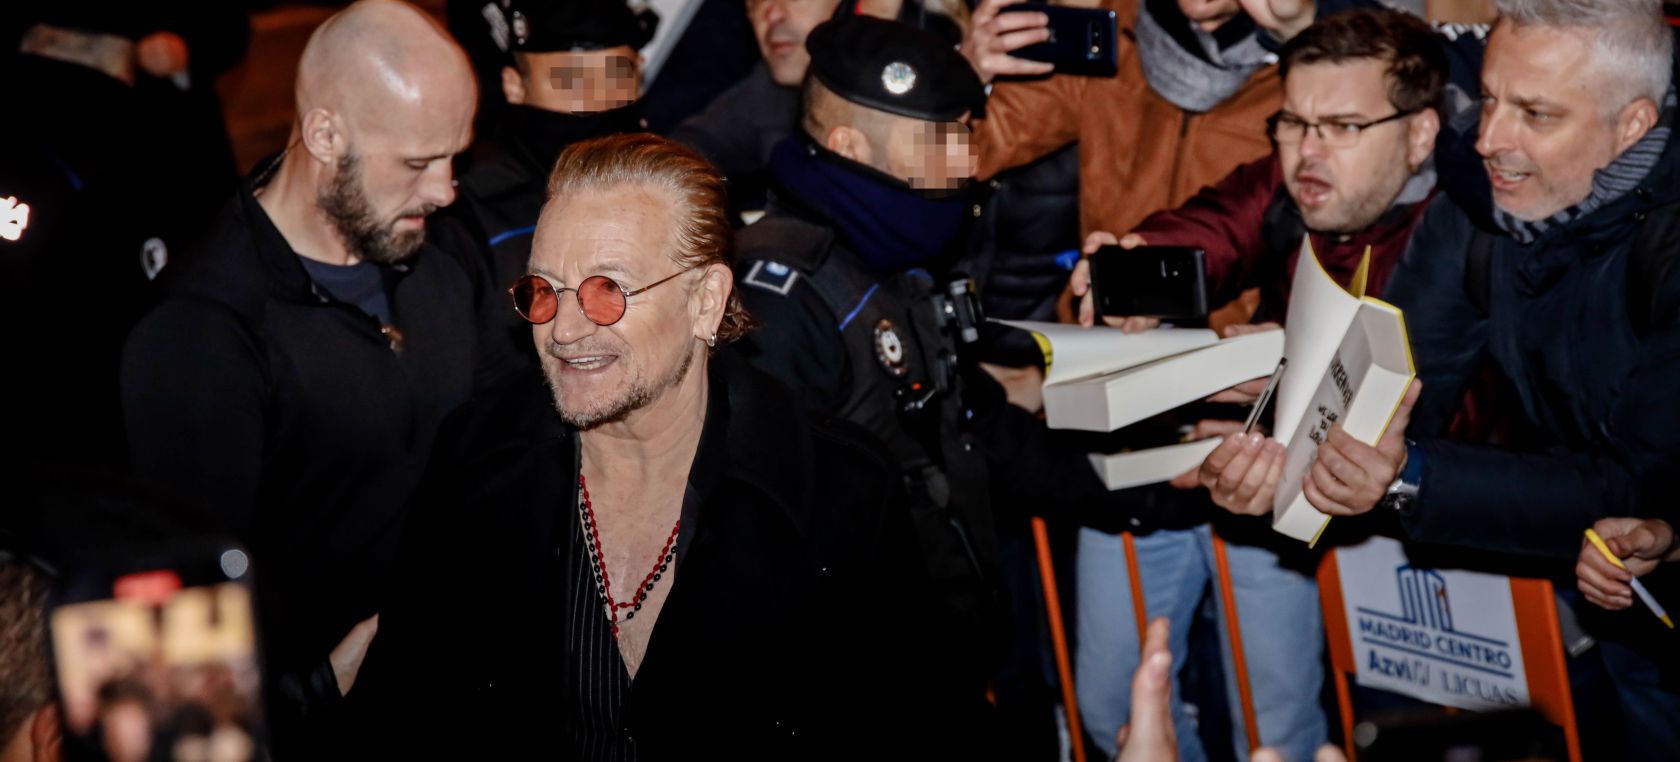 Bono, líder de U2, aparece por sorpresa en una librería del barrio  madrileño de Malasaña | LOS40 Classic | LOS40